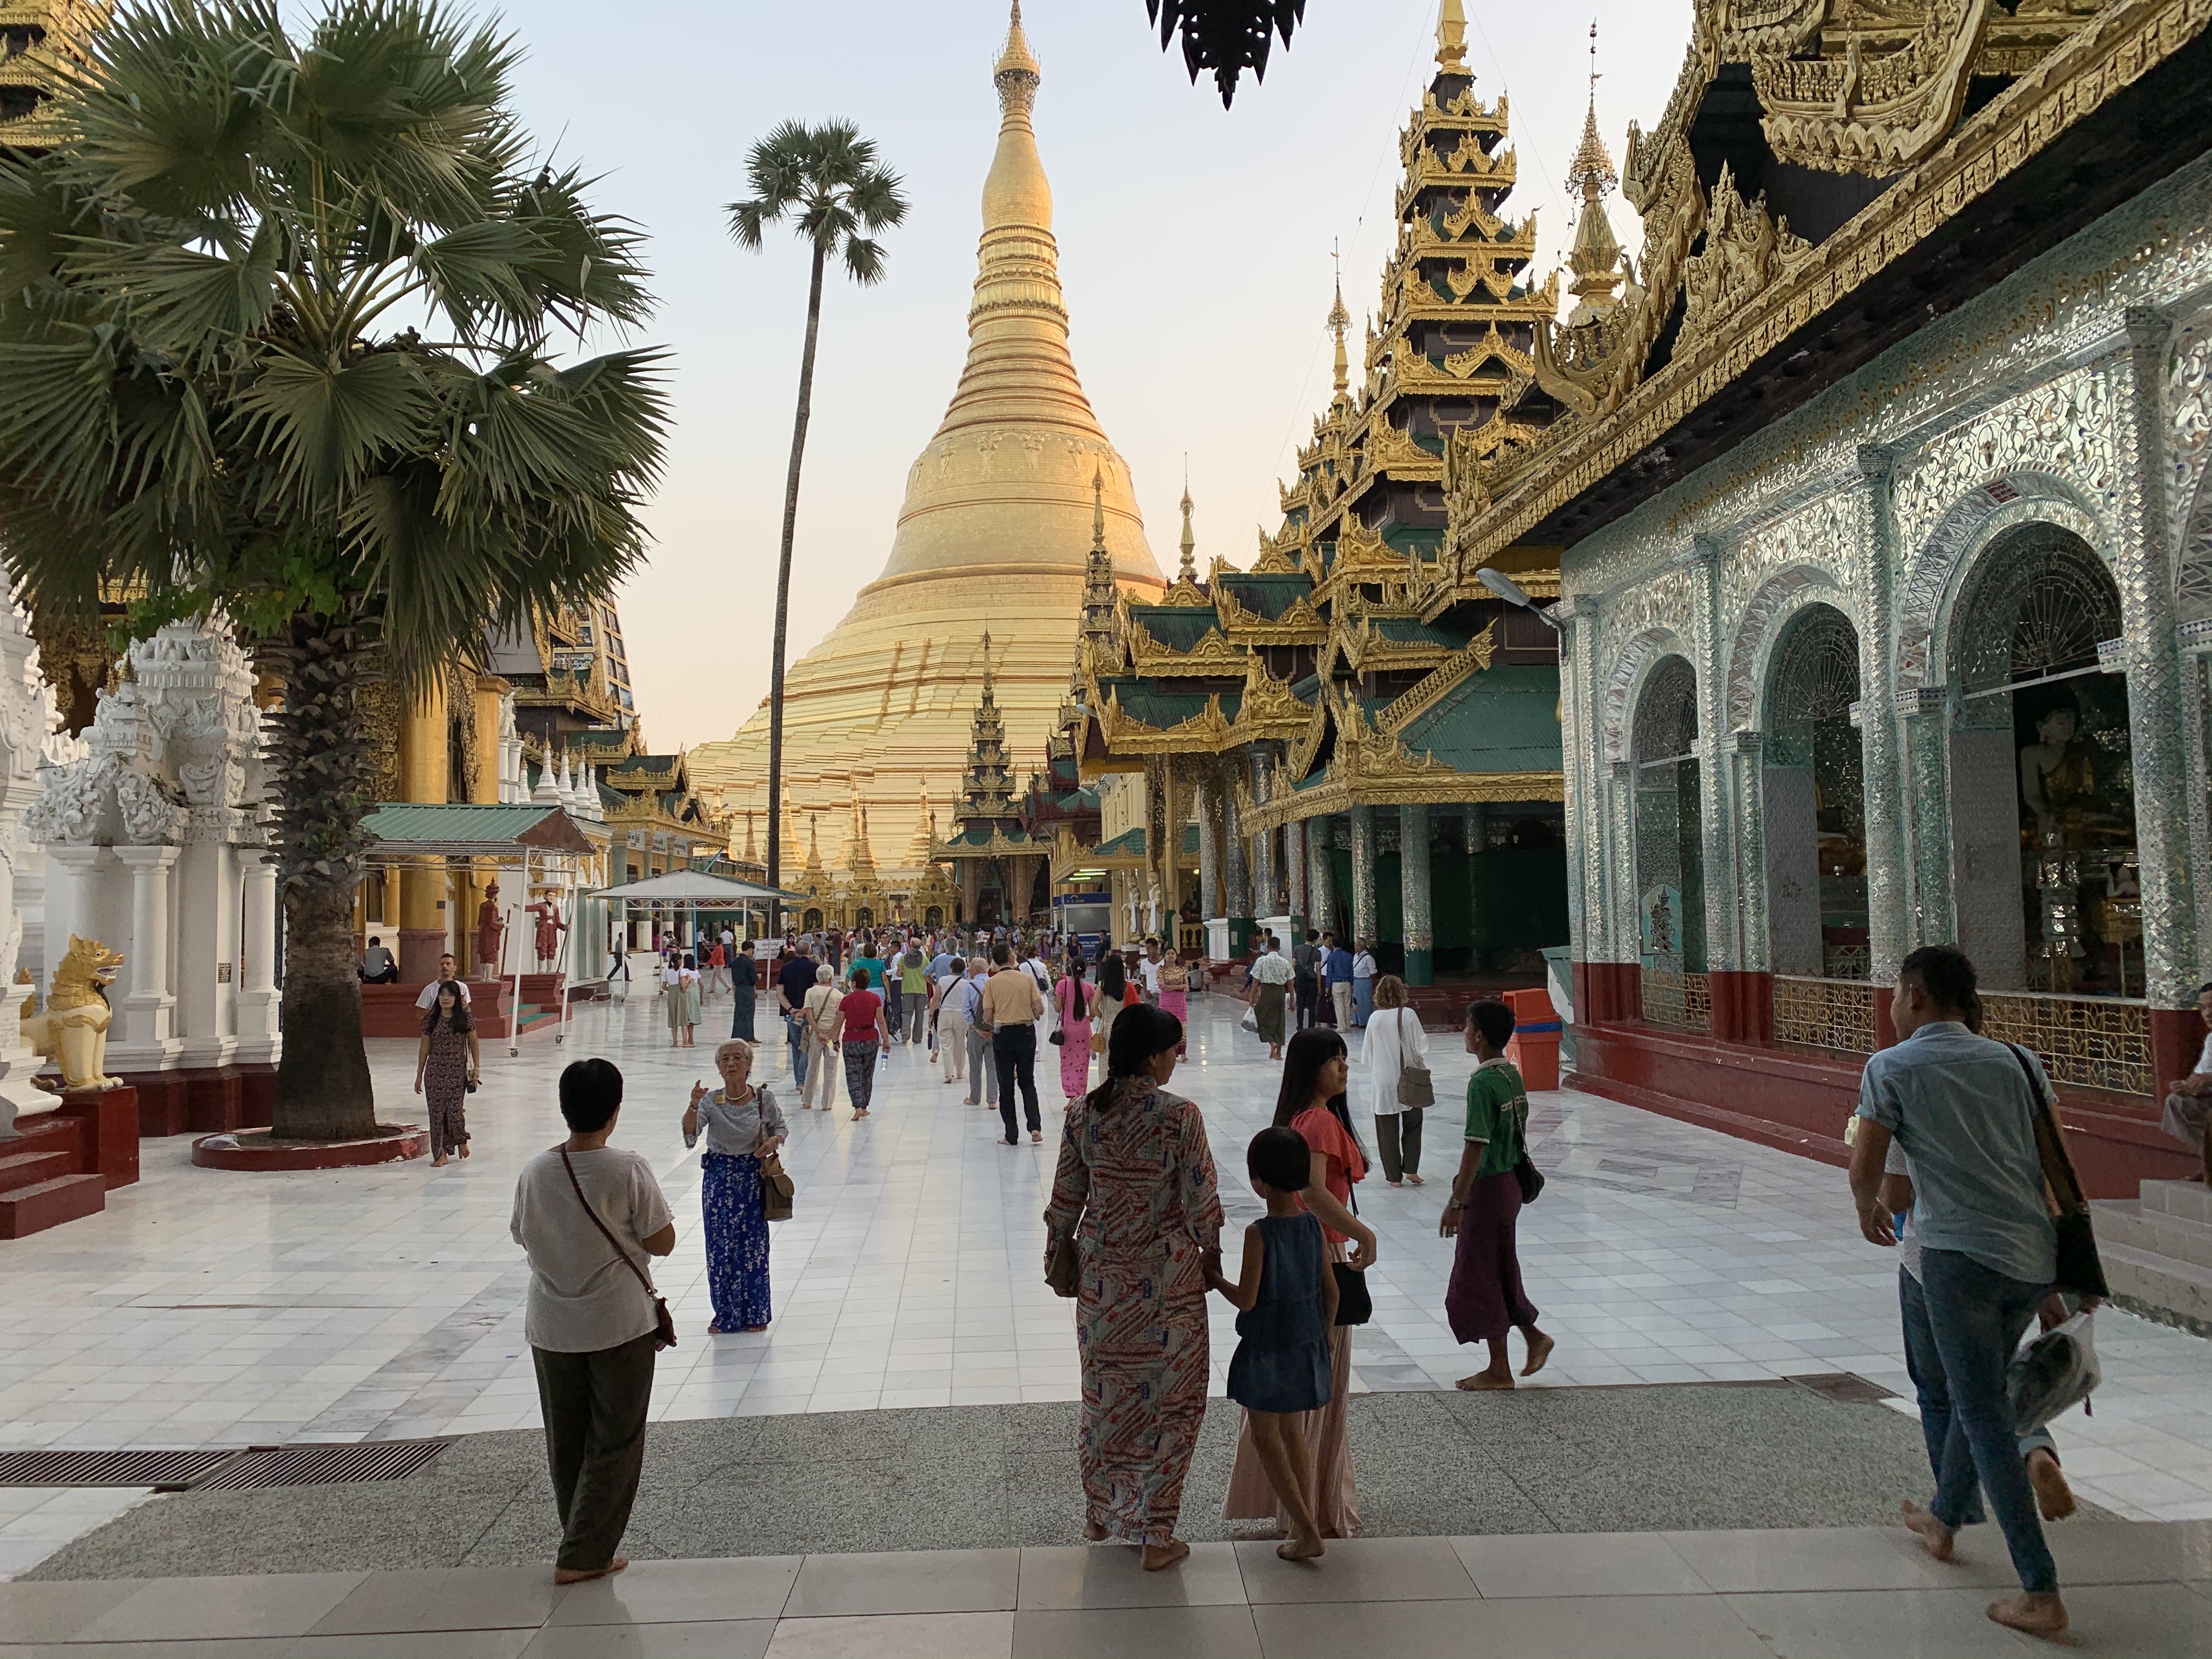 První pohled na pagodu zblízka